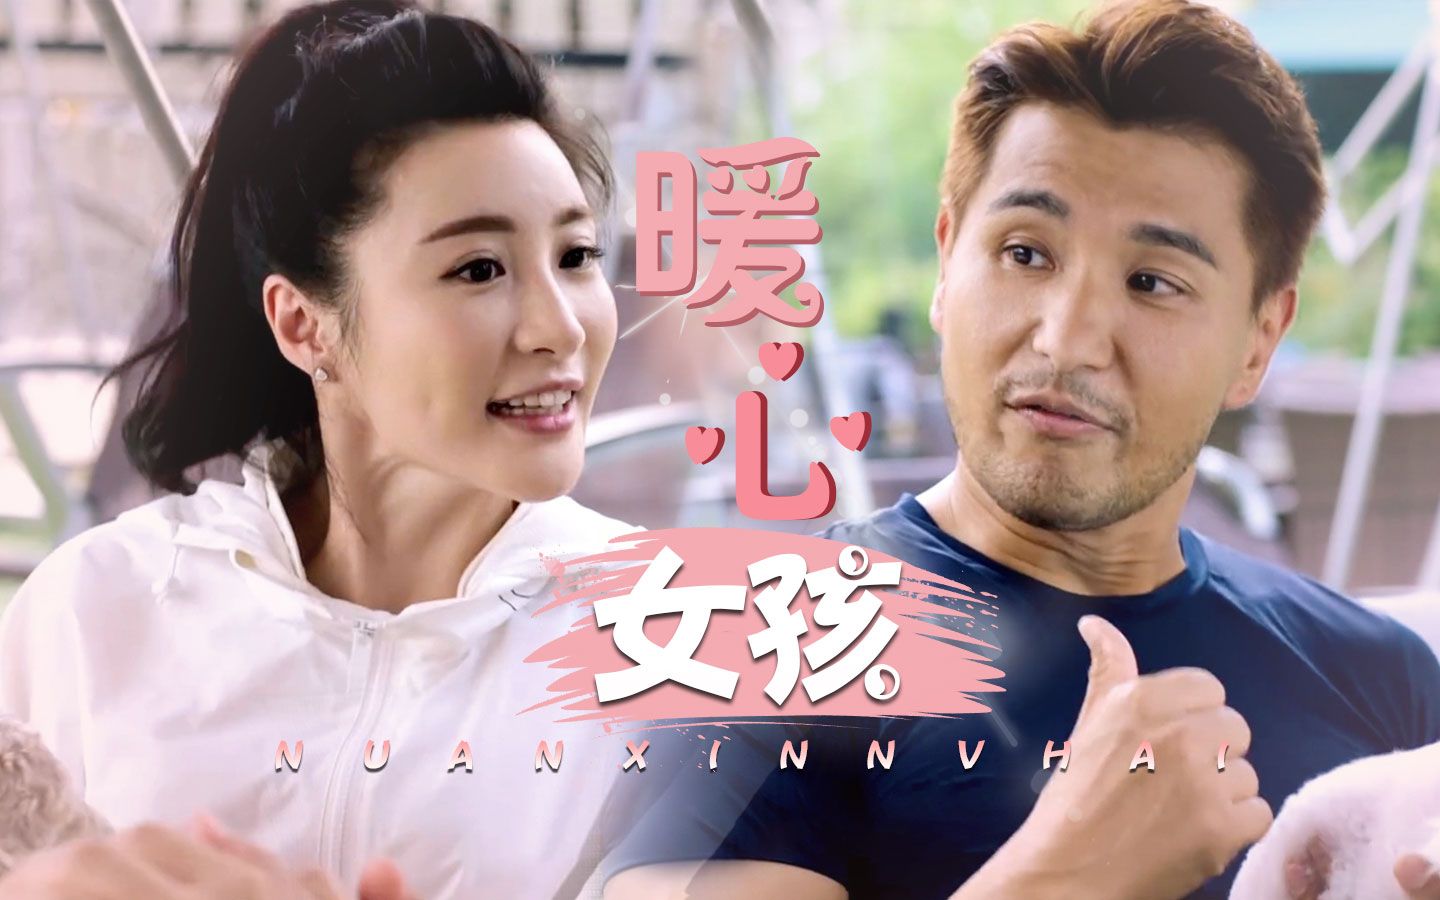 林夏薇争TVB视后 《逆天奇案》《七公主》双双入围傲视群芳